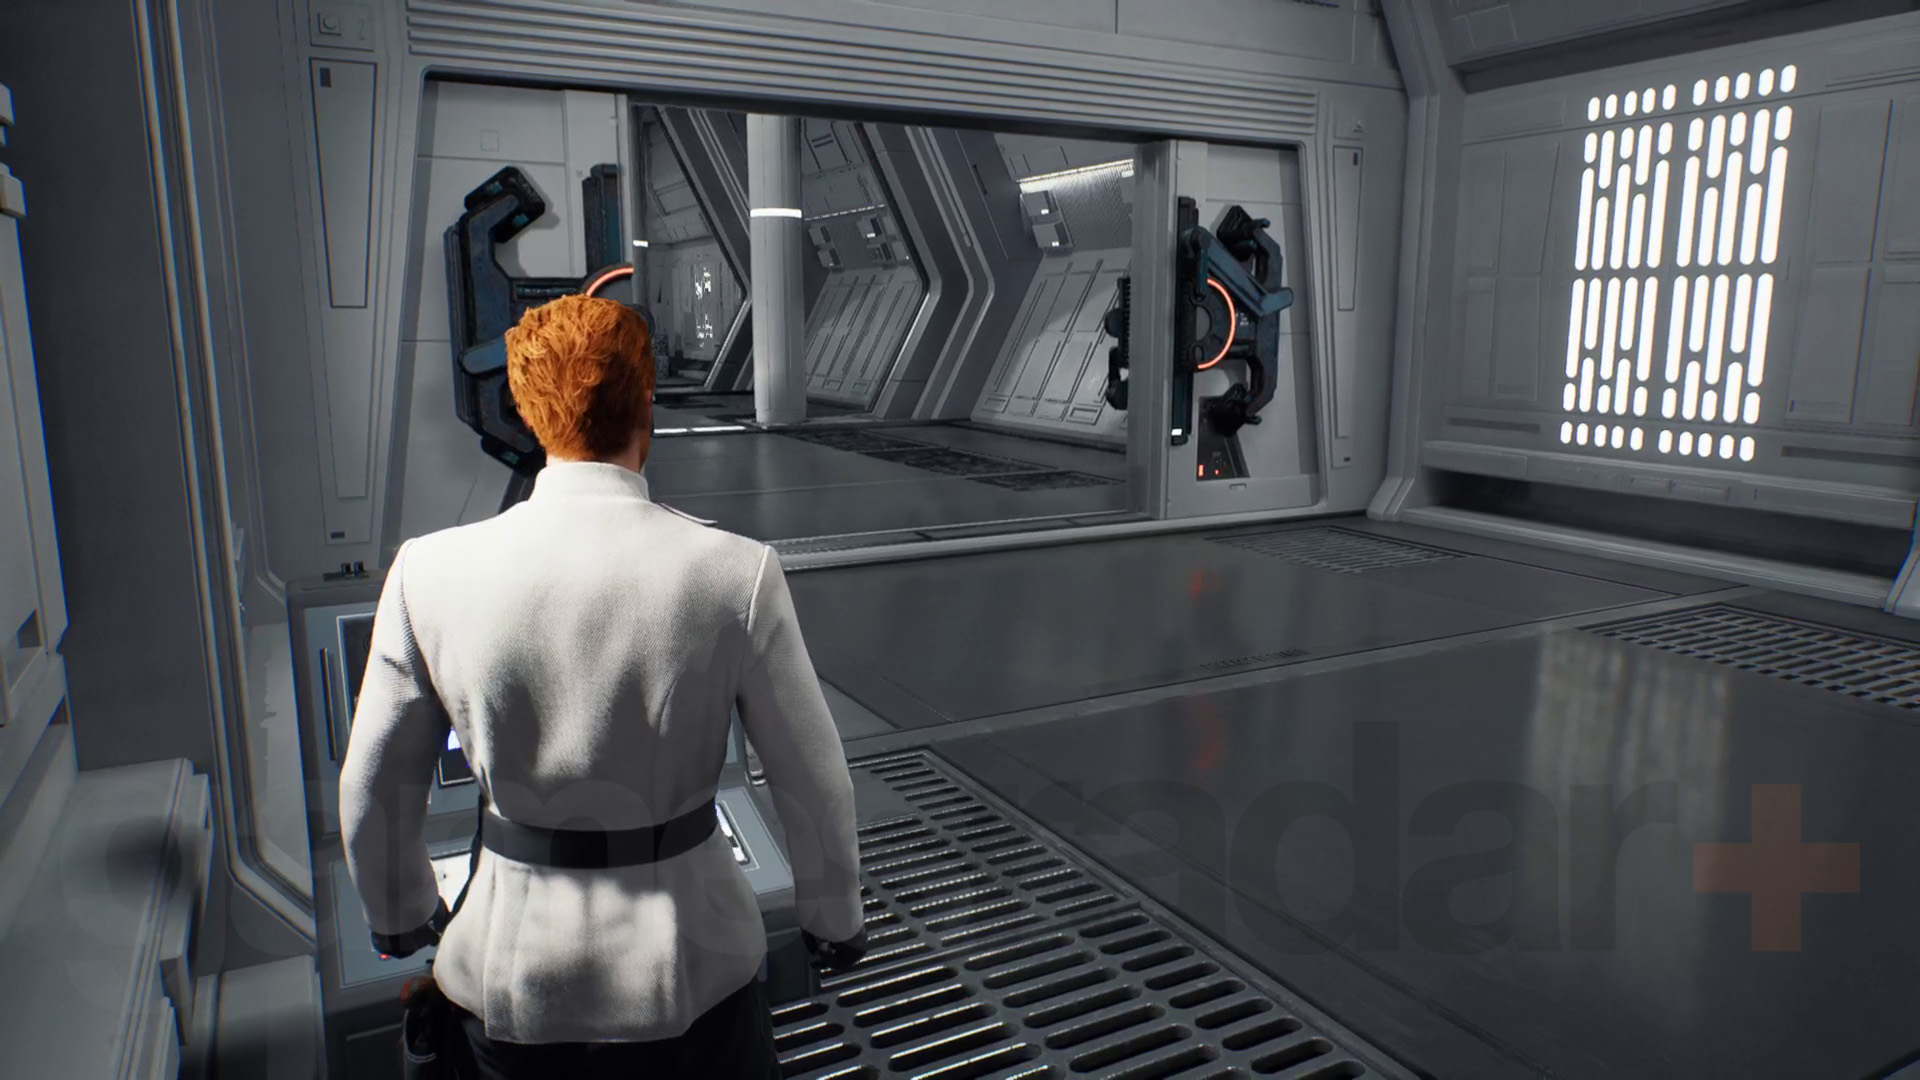 حرب النجوم Jedi الناجية Nova Garon تجول في زي ISB يفتح الباب باستخدام محطة